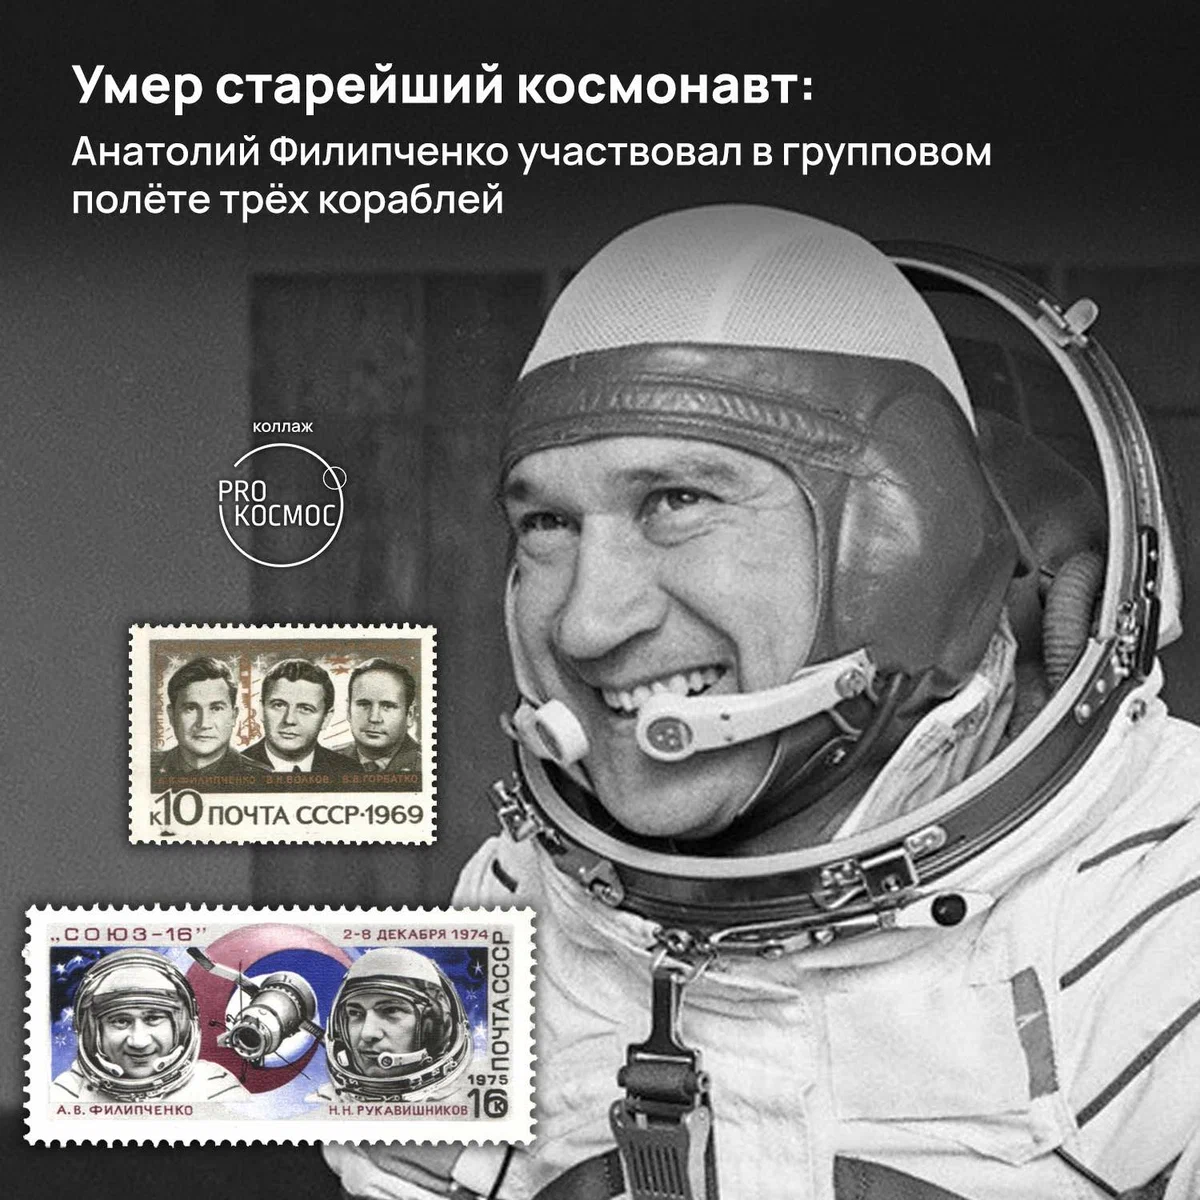 Умер старейший космонавт: Анатолий Филипченко участвовал в групповом полёте трёх кораблей height=1200px width=1200px